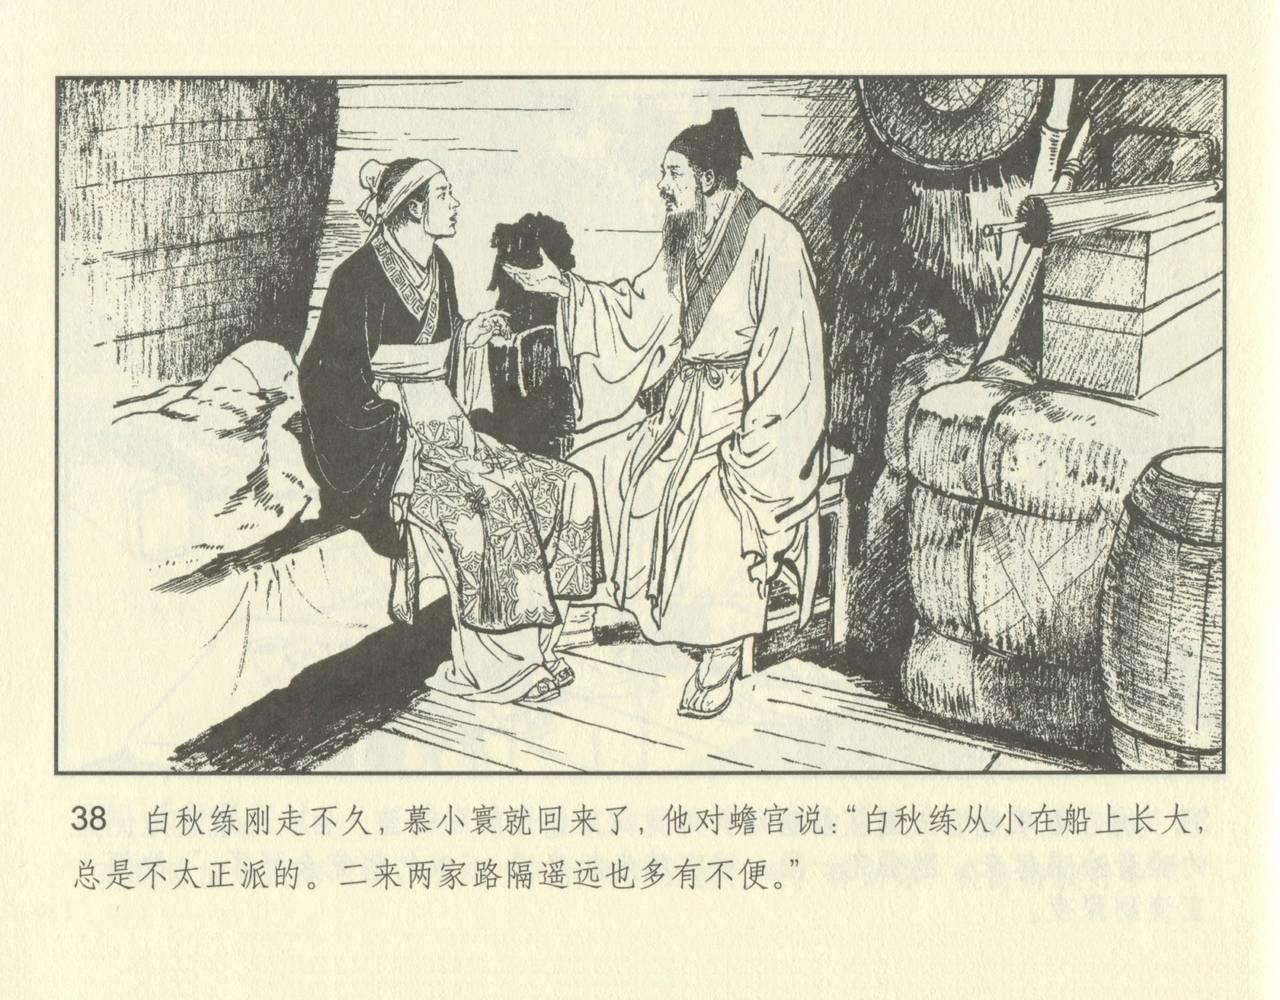 聊斋志异 张玮等绘 天津人民美术出版社 卷二十一 ~ 三十 87